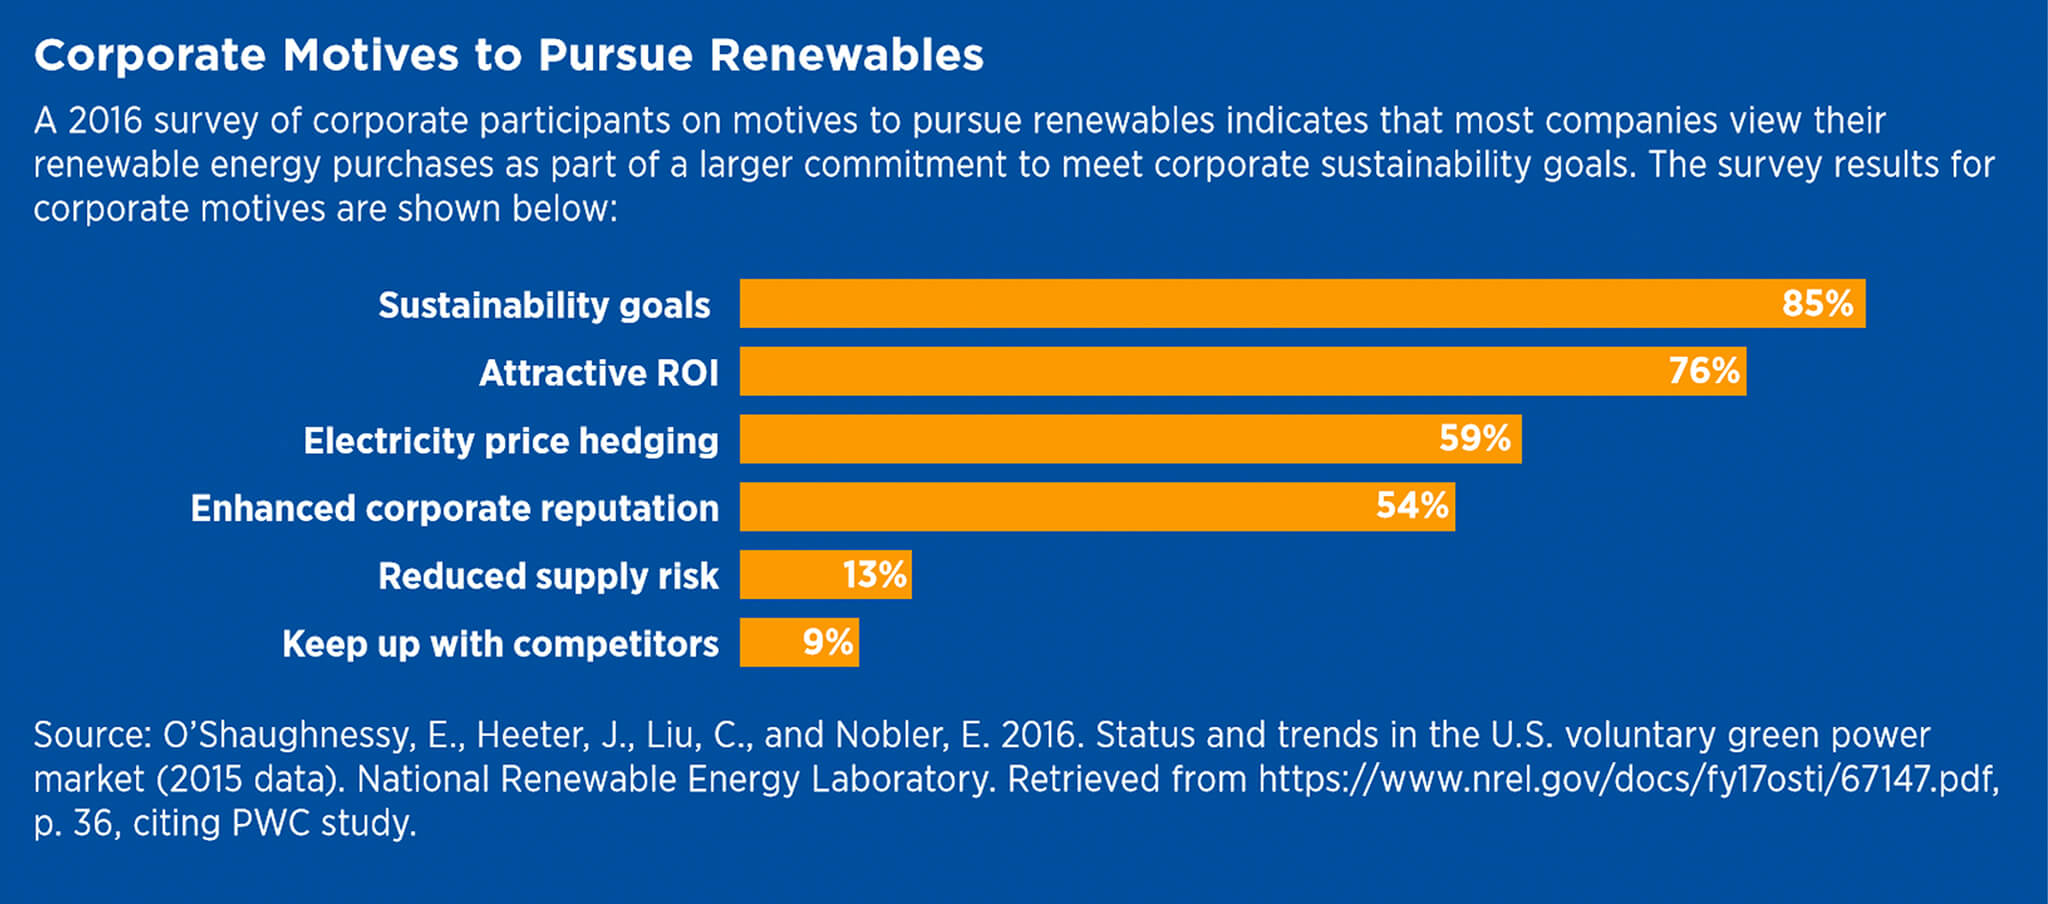 Corporate Motives to Pursue Renewables